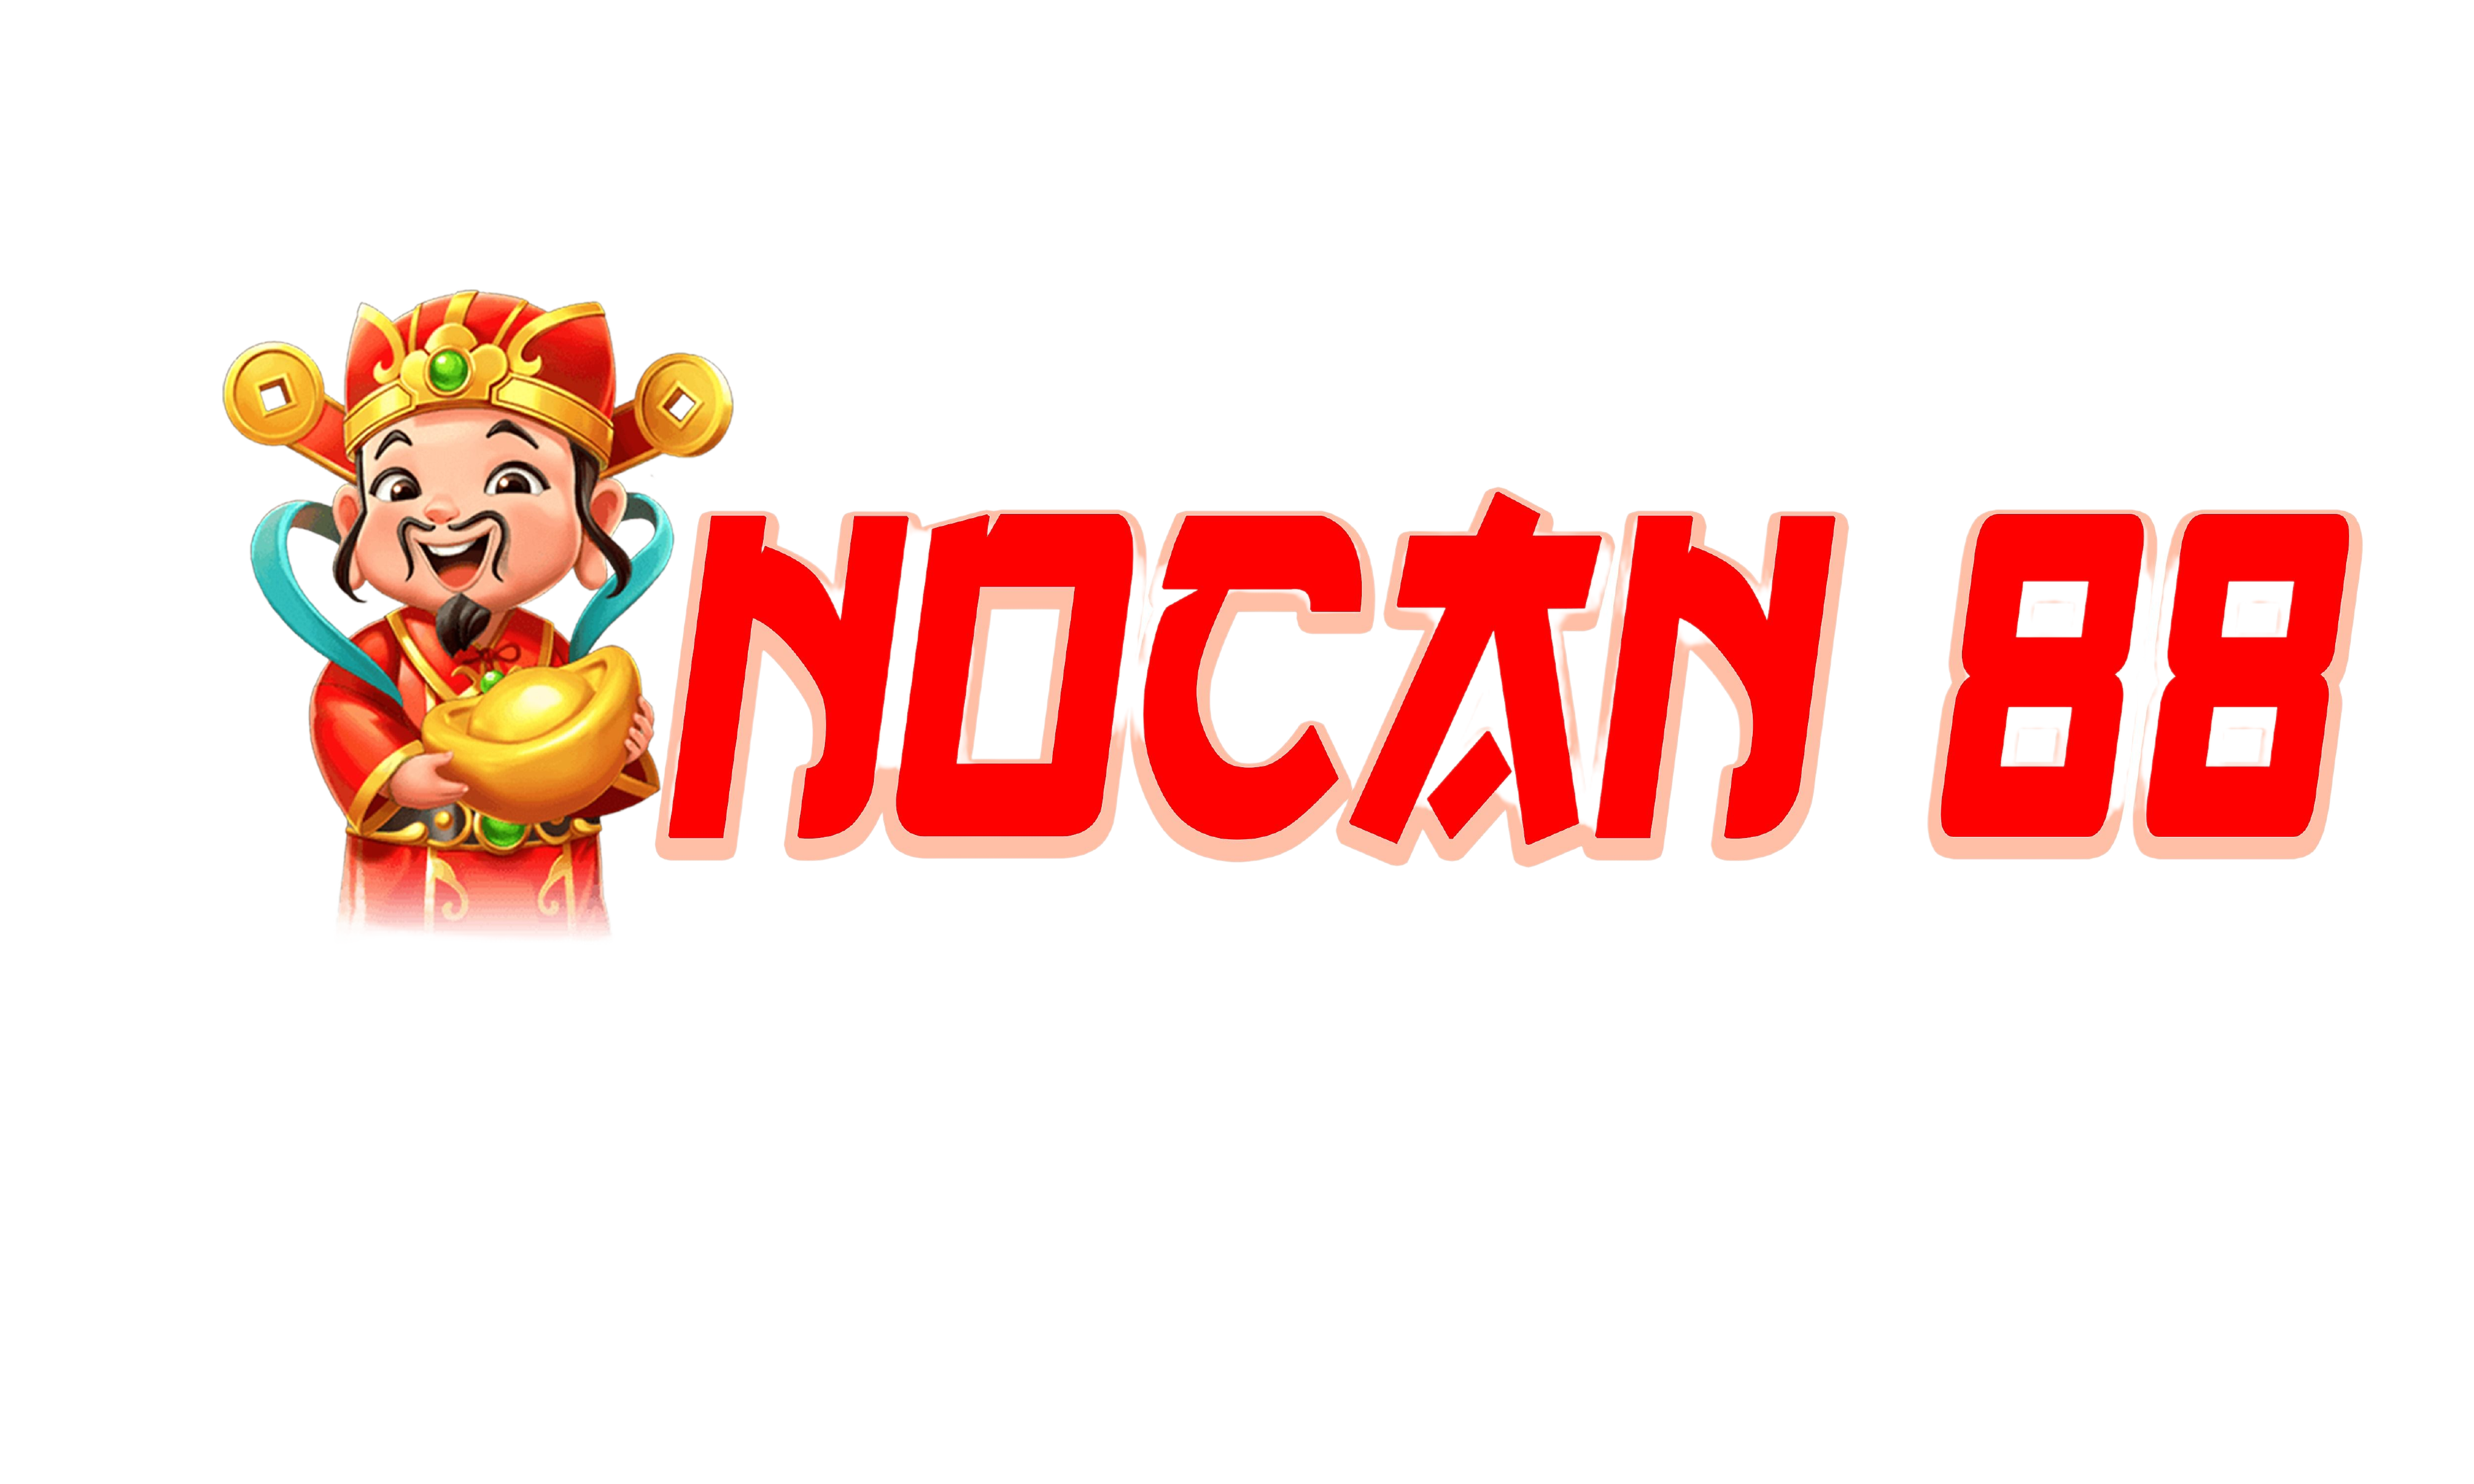 Nocan88